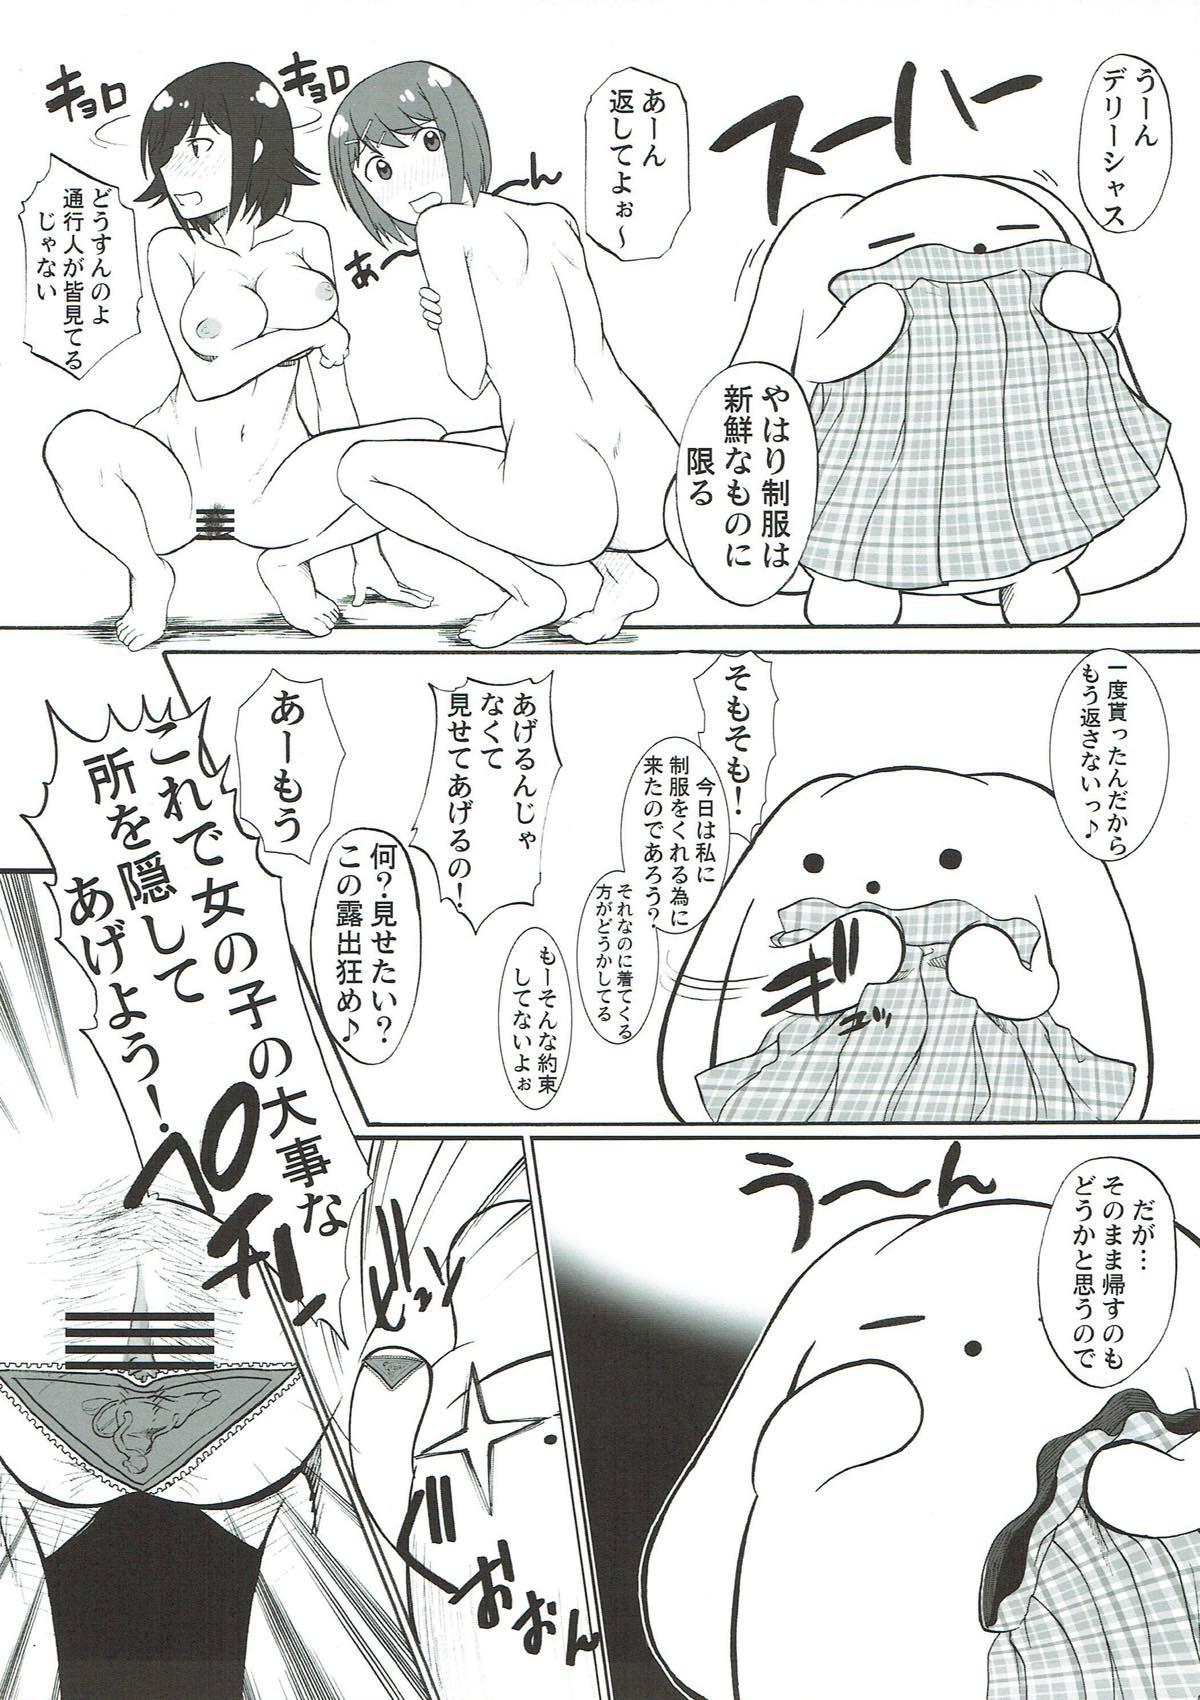 19yo Toriaezu Beam de! - Wooser no sonohigurashi Asslicking - Page 8